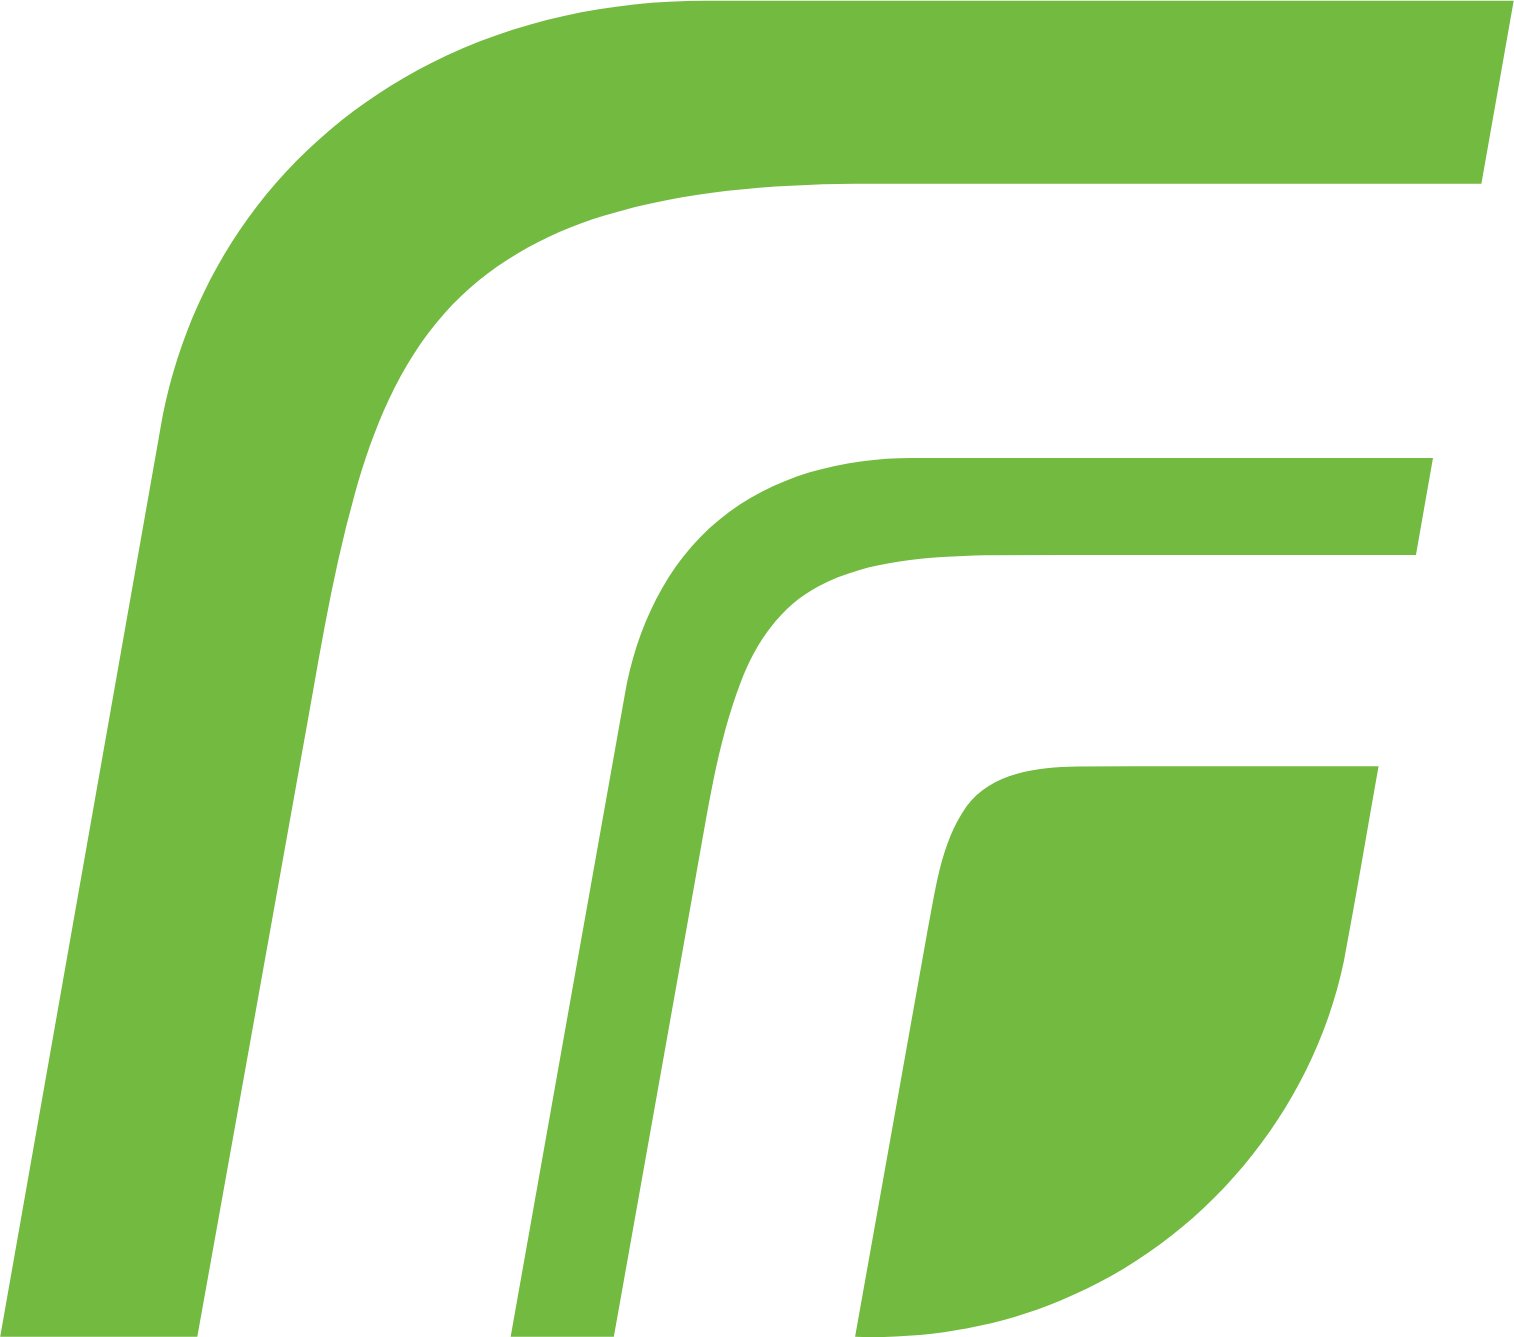 Regal Rexnord logo (transparent PNG)